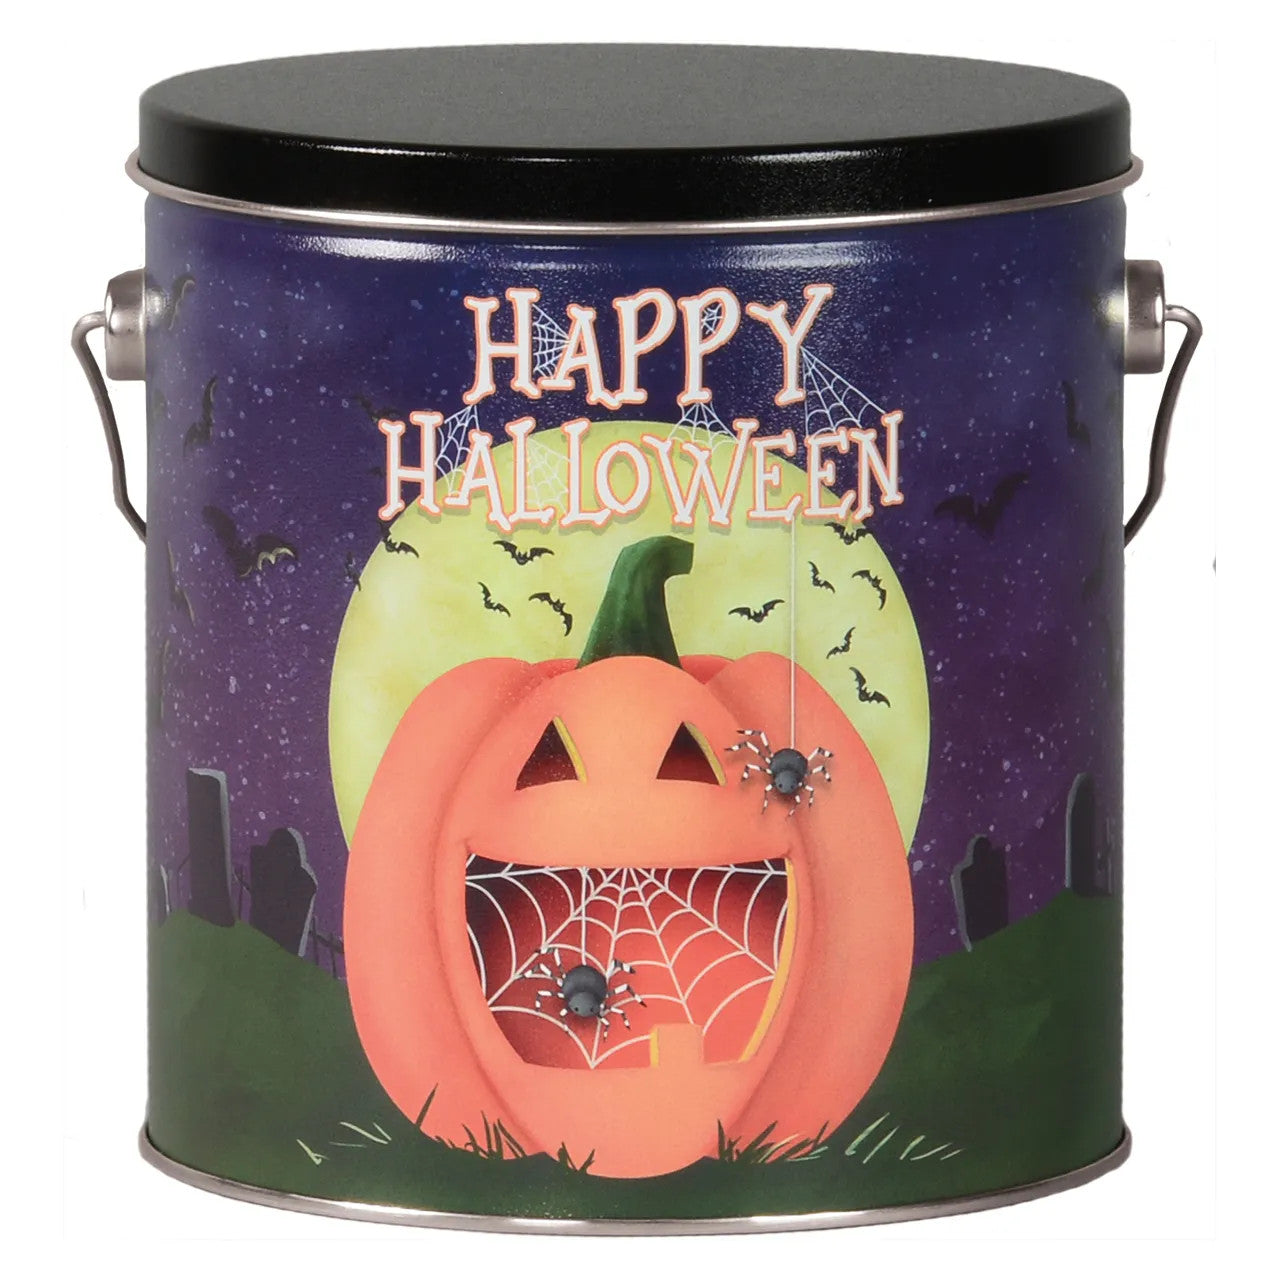 Happy Halloween Popcorn Tin - 1 Gallon